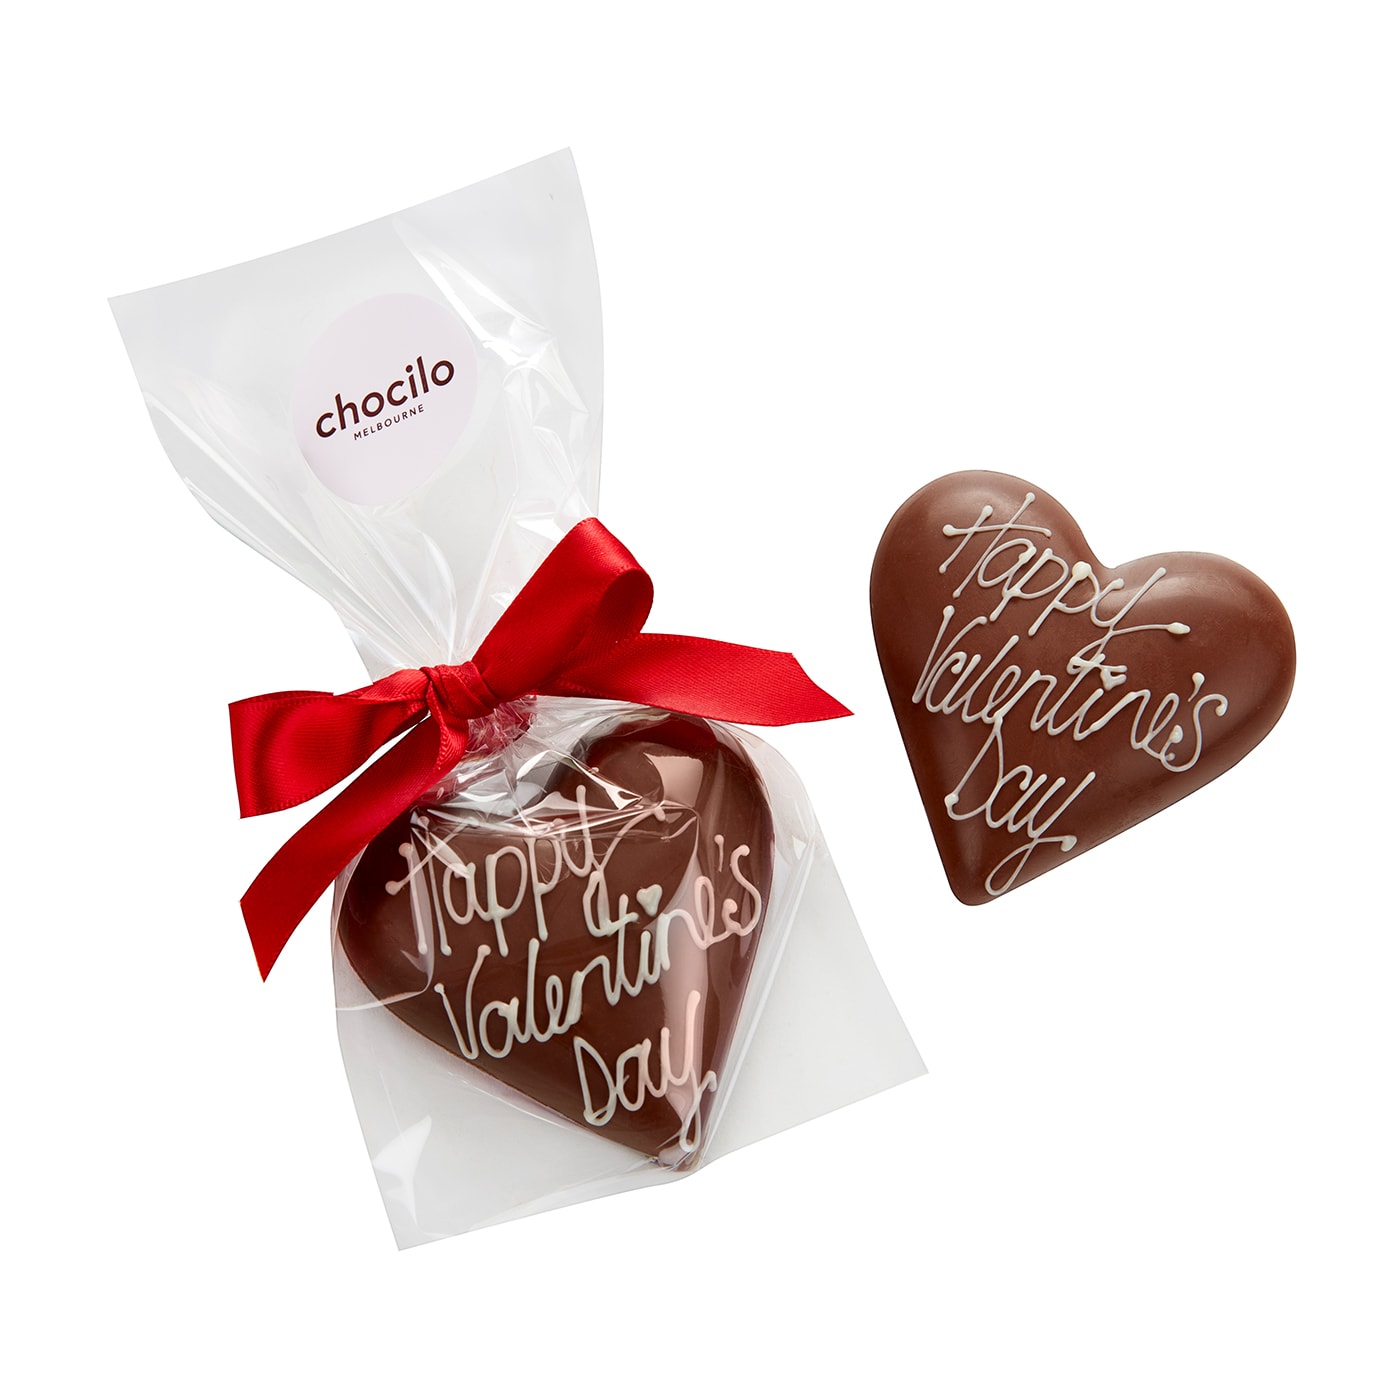 Chocilo Melbourne "Happy Valentine's Day" Praline Heart in Milk Chocolate 30g